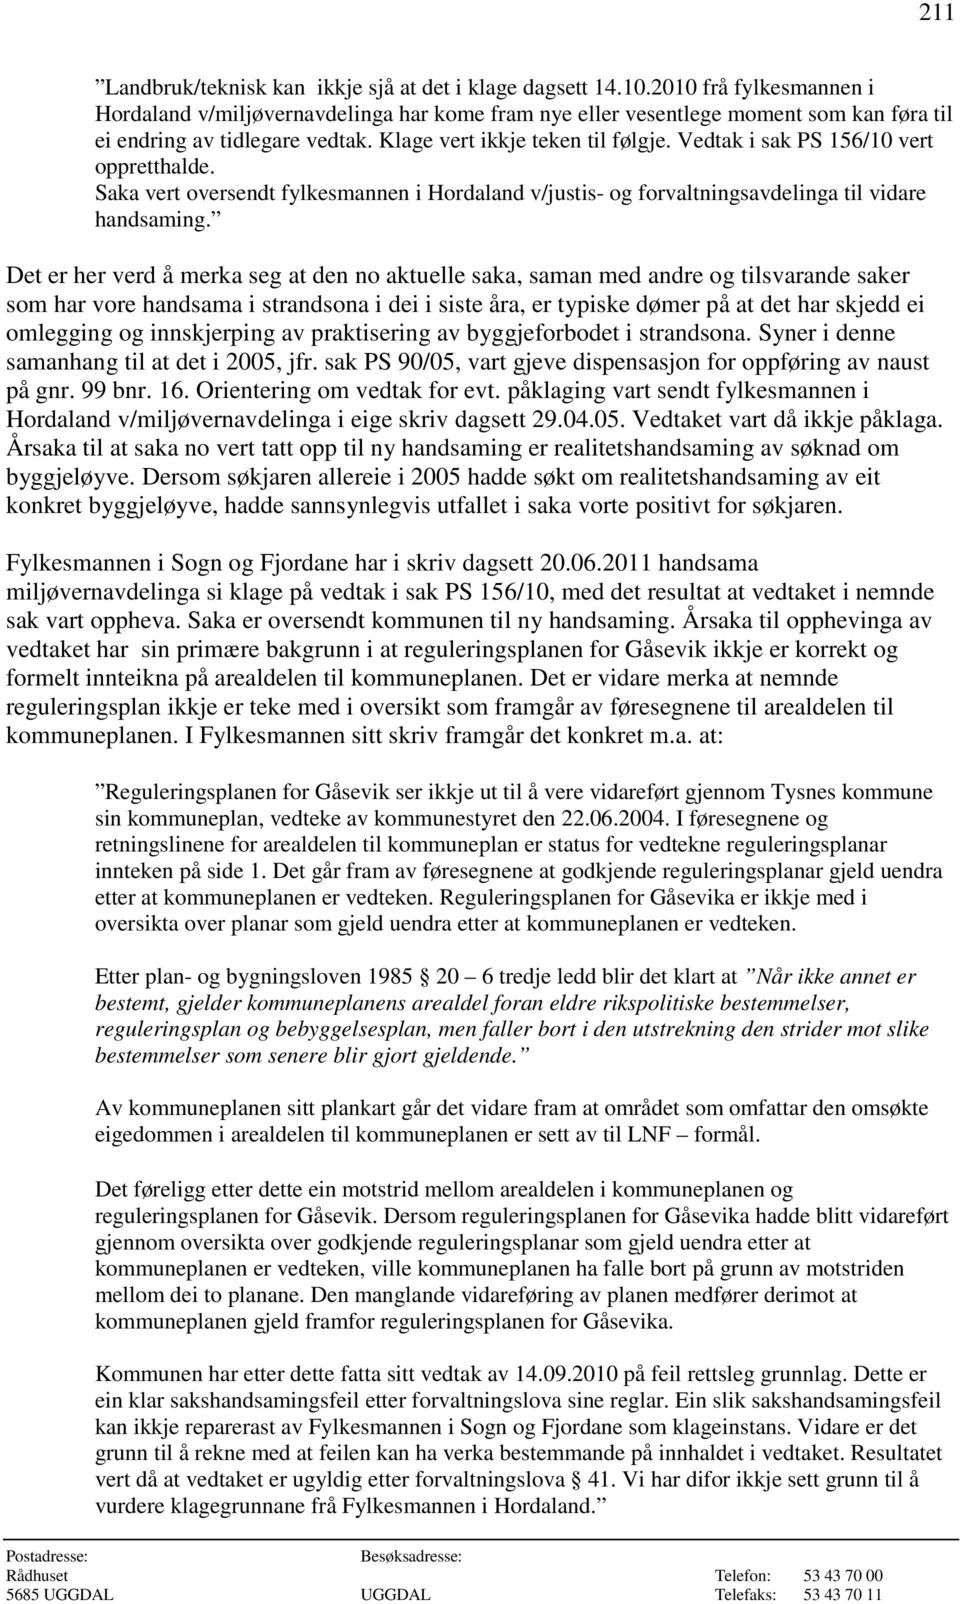 Vedtak i sak PS 156/10 vert oppretthalde. Saka vert oversendt fylkesmannen i Hordaland v/justis- og forvaltningsavdelinga til vidare handsaming.